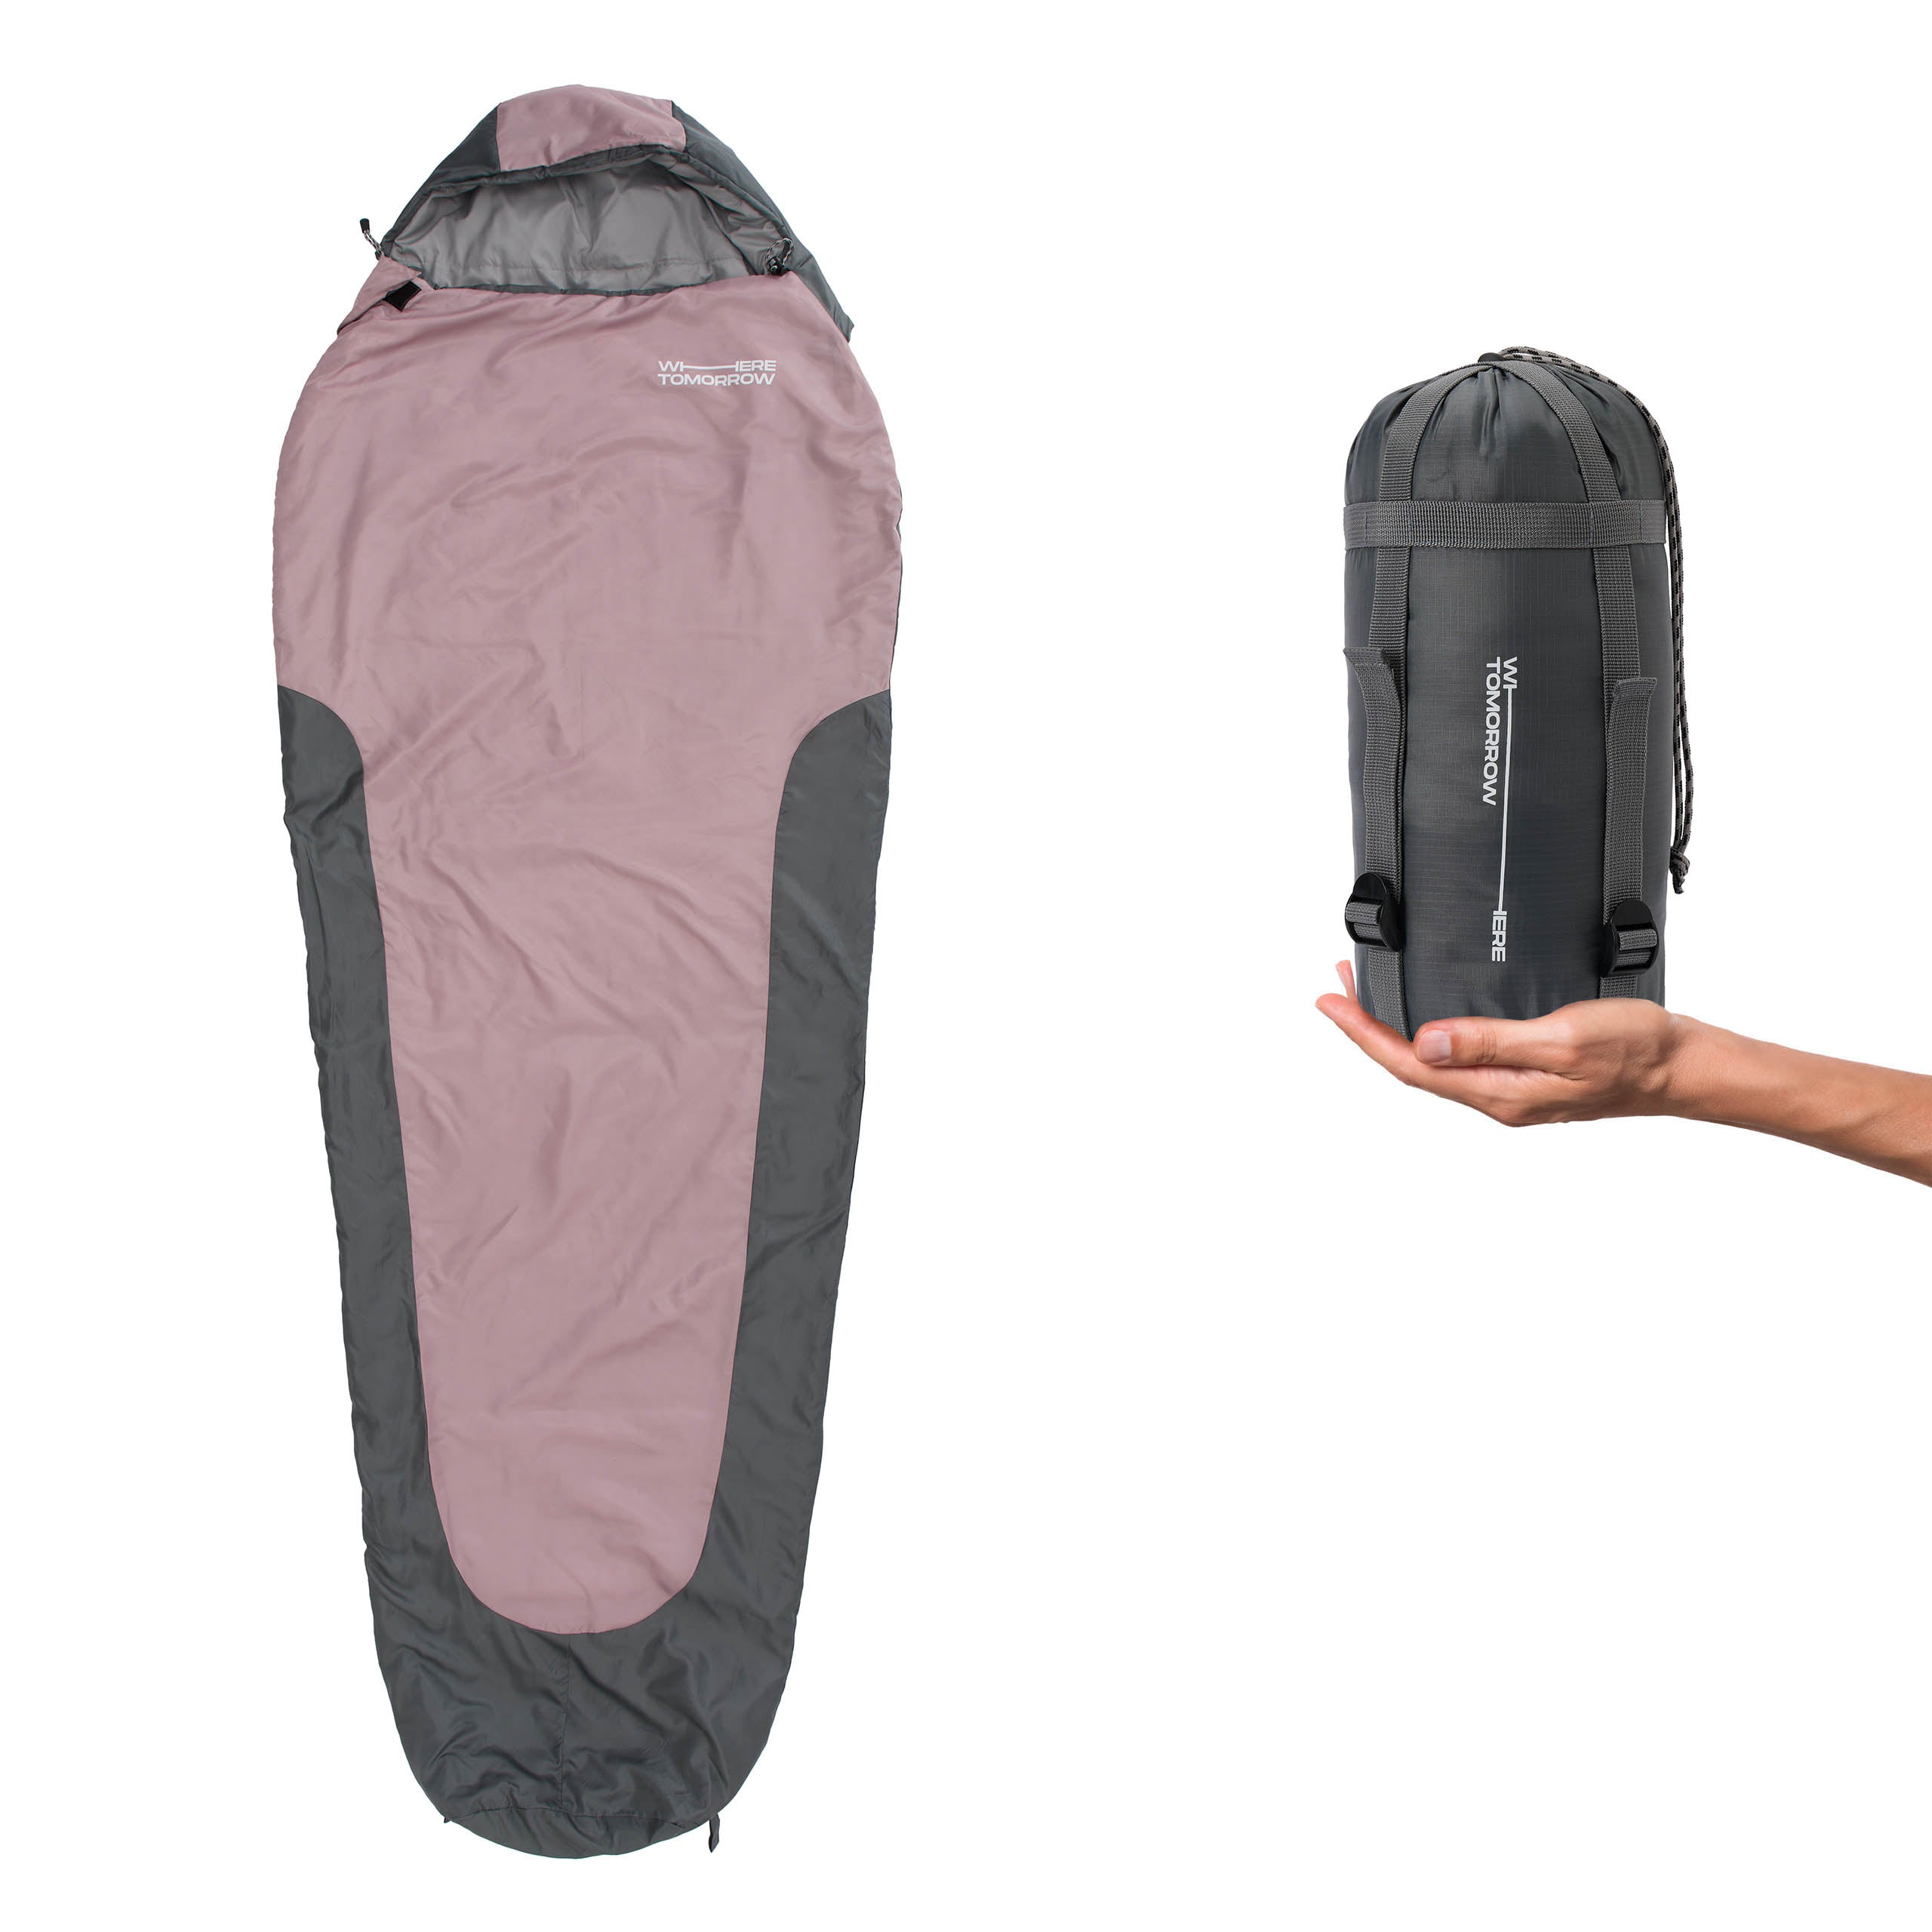 Camping Schlafsack Small & Light - Mumienschlafsack mit Tasche - 220 x 80 x 50 cm - Rose-Grau